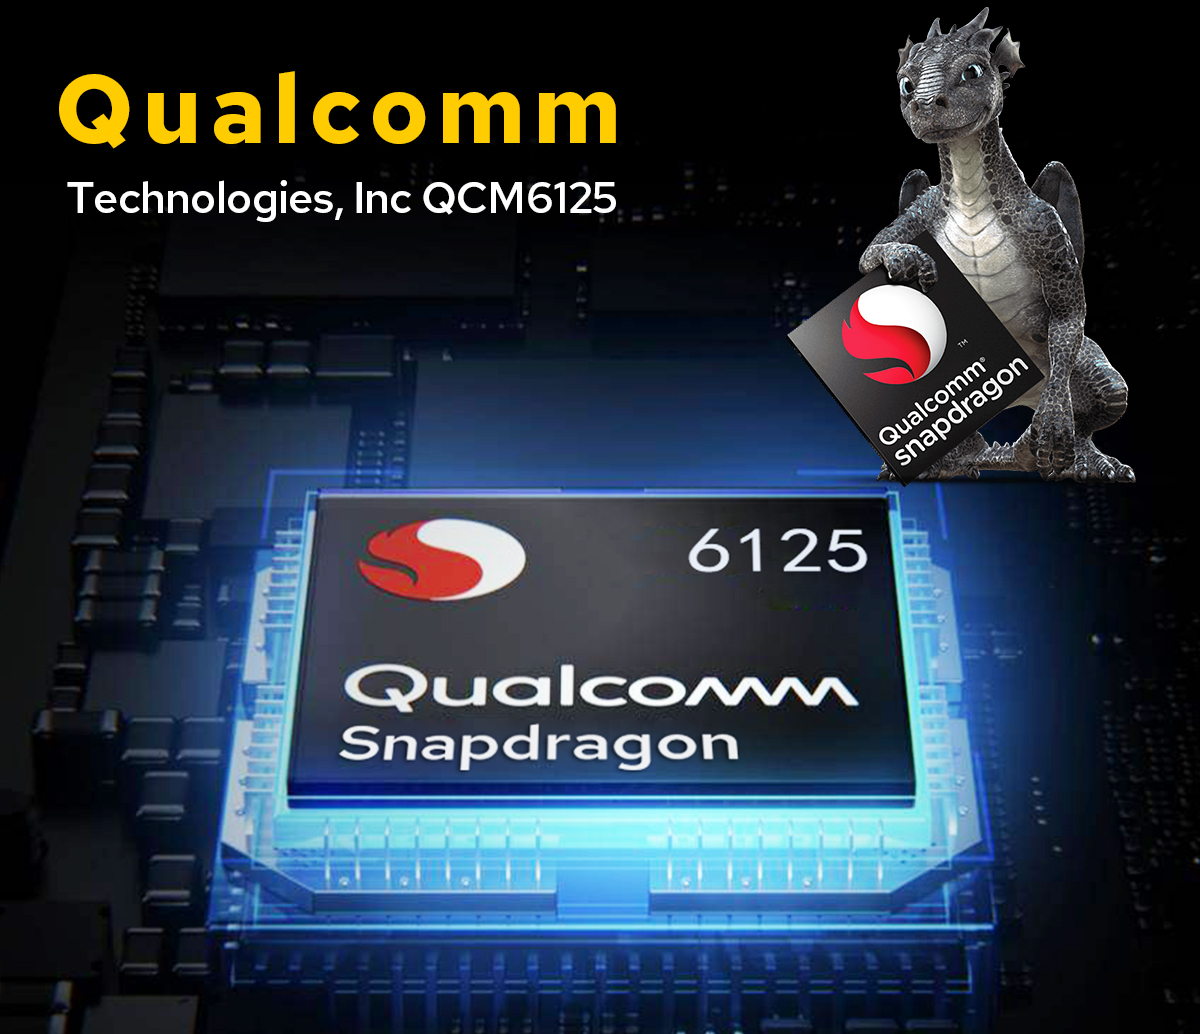 JOYING 15.1 Inch Qualcomm Snapdragon 6125 Car Radio Universal Single DIN